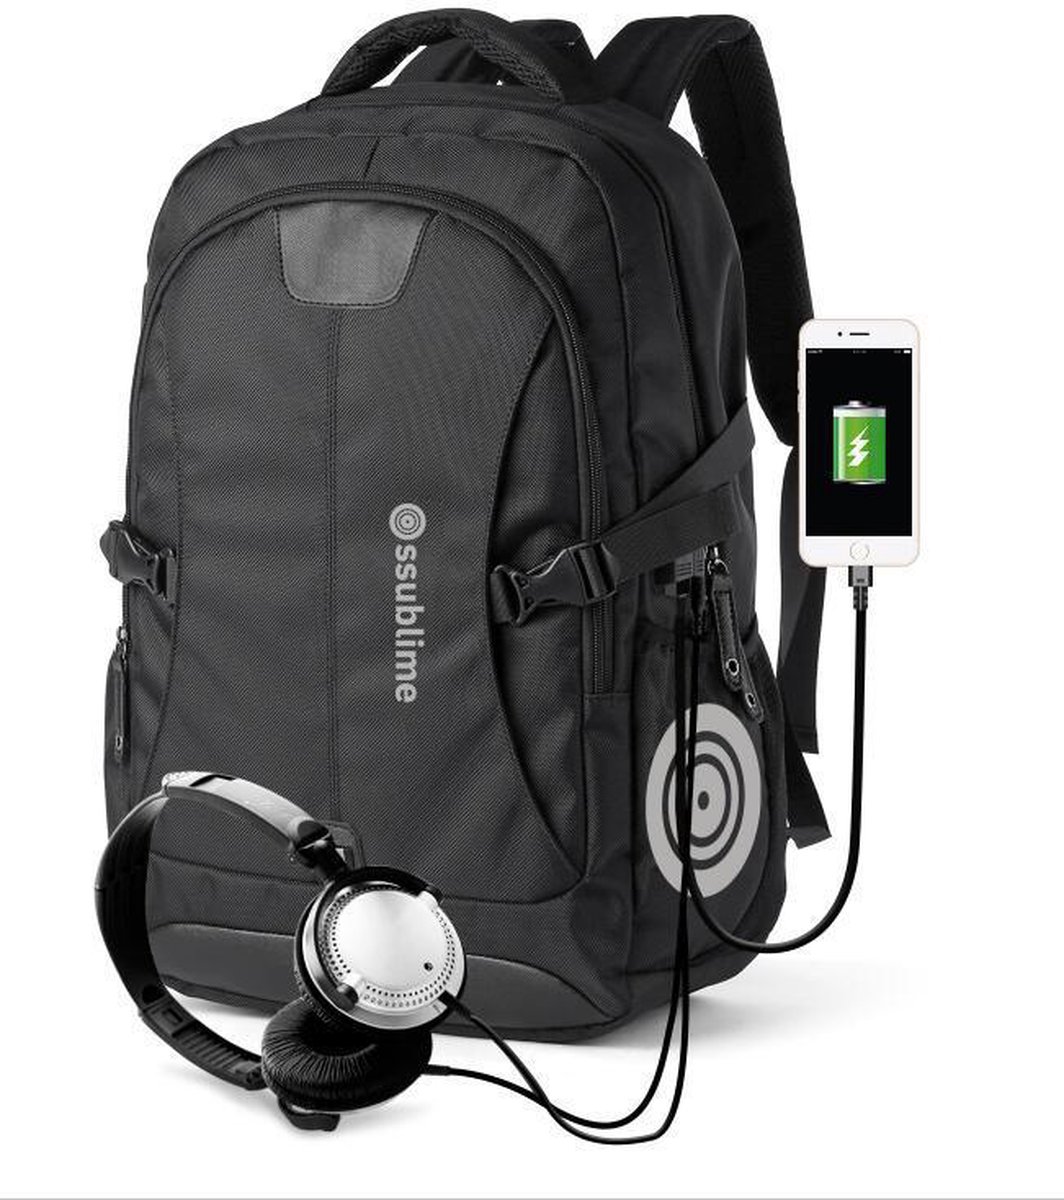 ssublime Rugzak met 15.6 Inch Laptop Vak - 27L Rugtas voor Mannen en Vrouwen - Spatwaterdichte Anti-diefstal Backpack - Tas voor School - Werk - Reizen - Met USB en Audio Aansluiting- Zwart